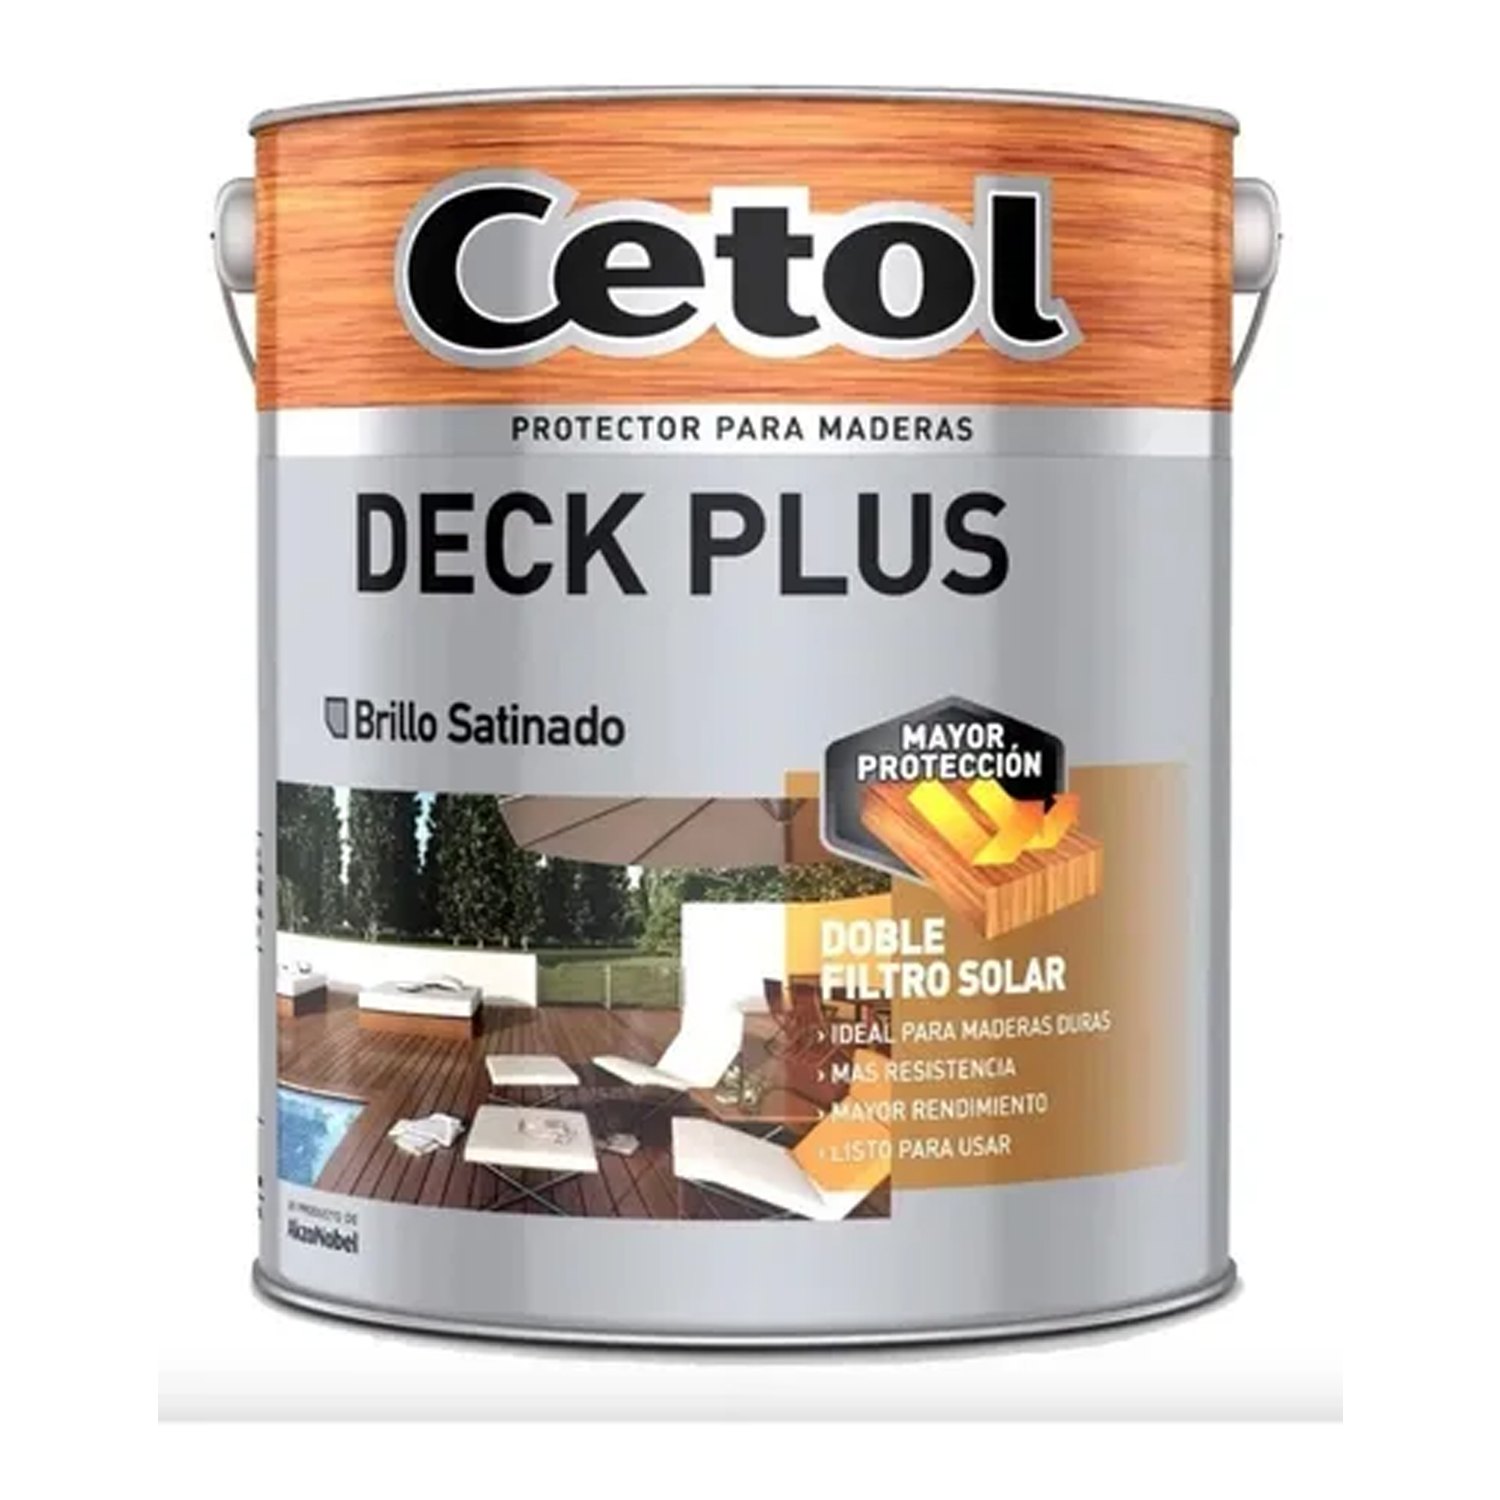 Cetol Deck Plus Natural 4 lts